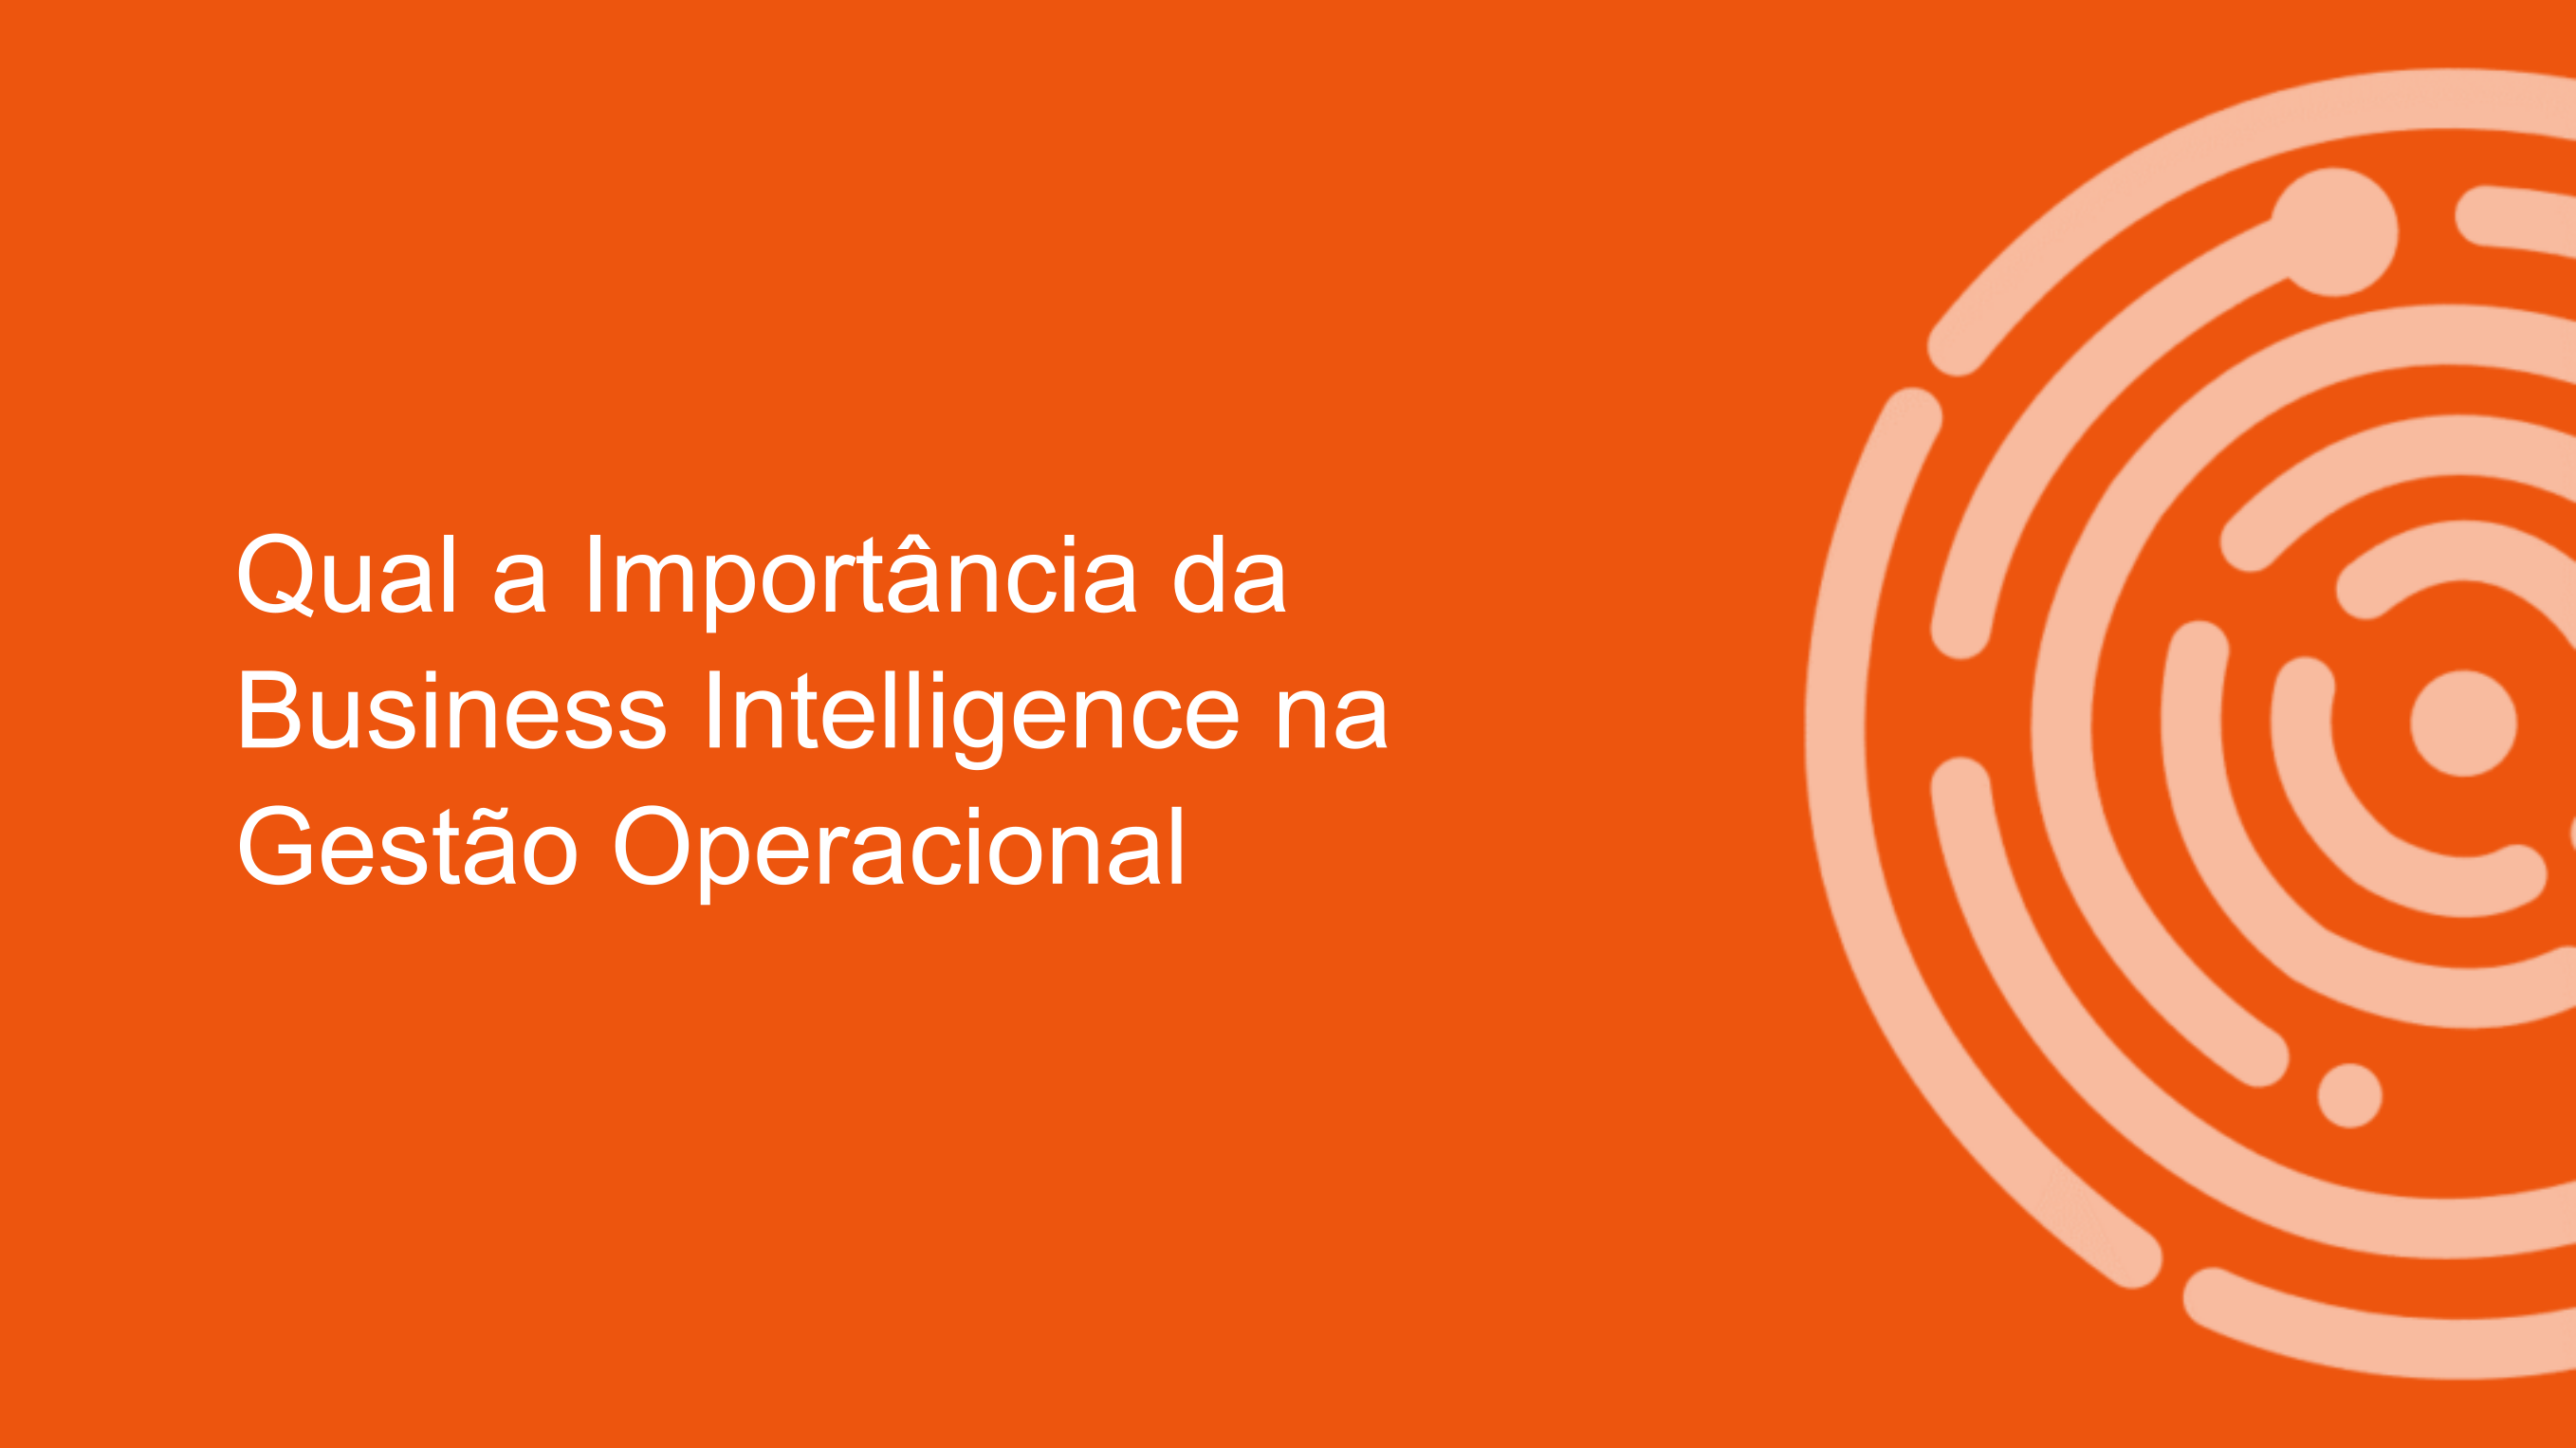 Qual a importância da Business Intelligence na Gestão Operacional